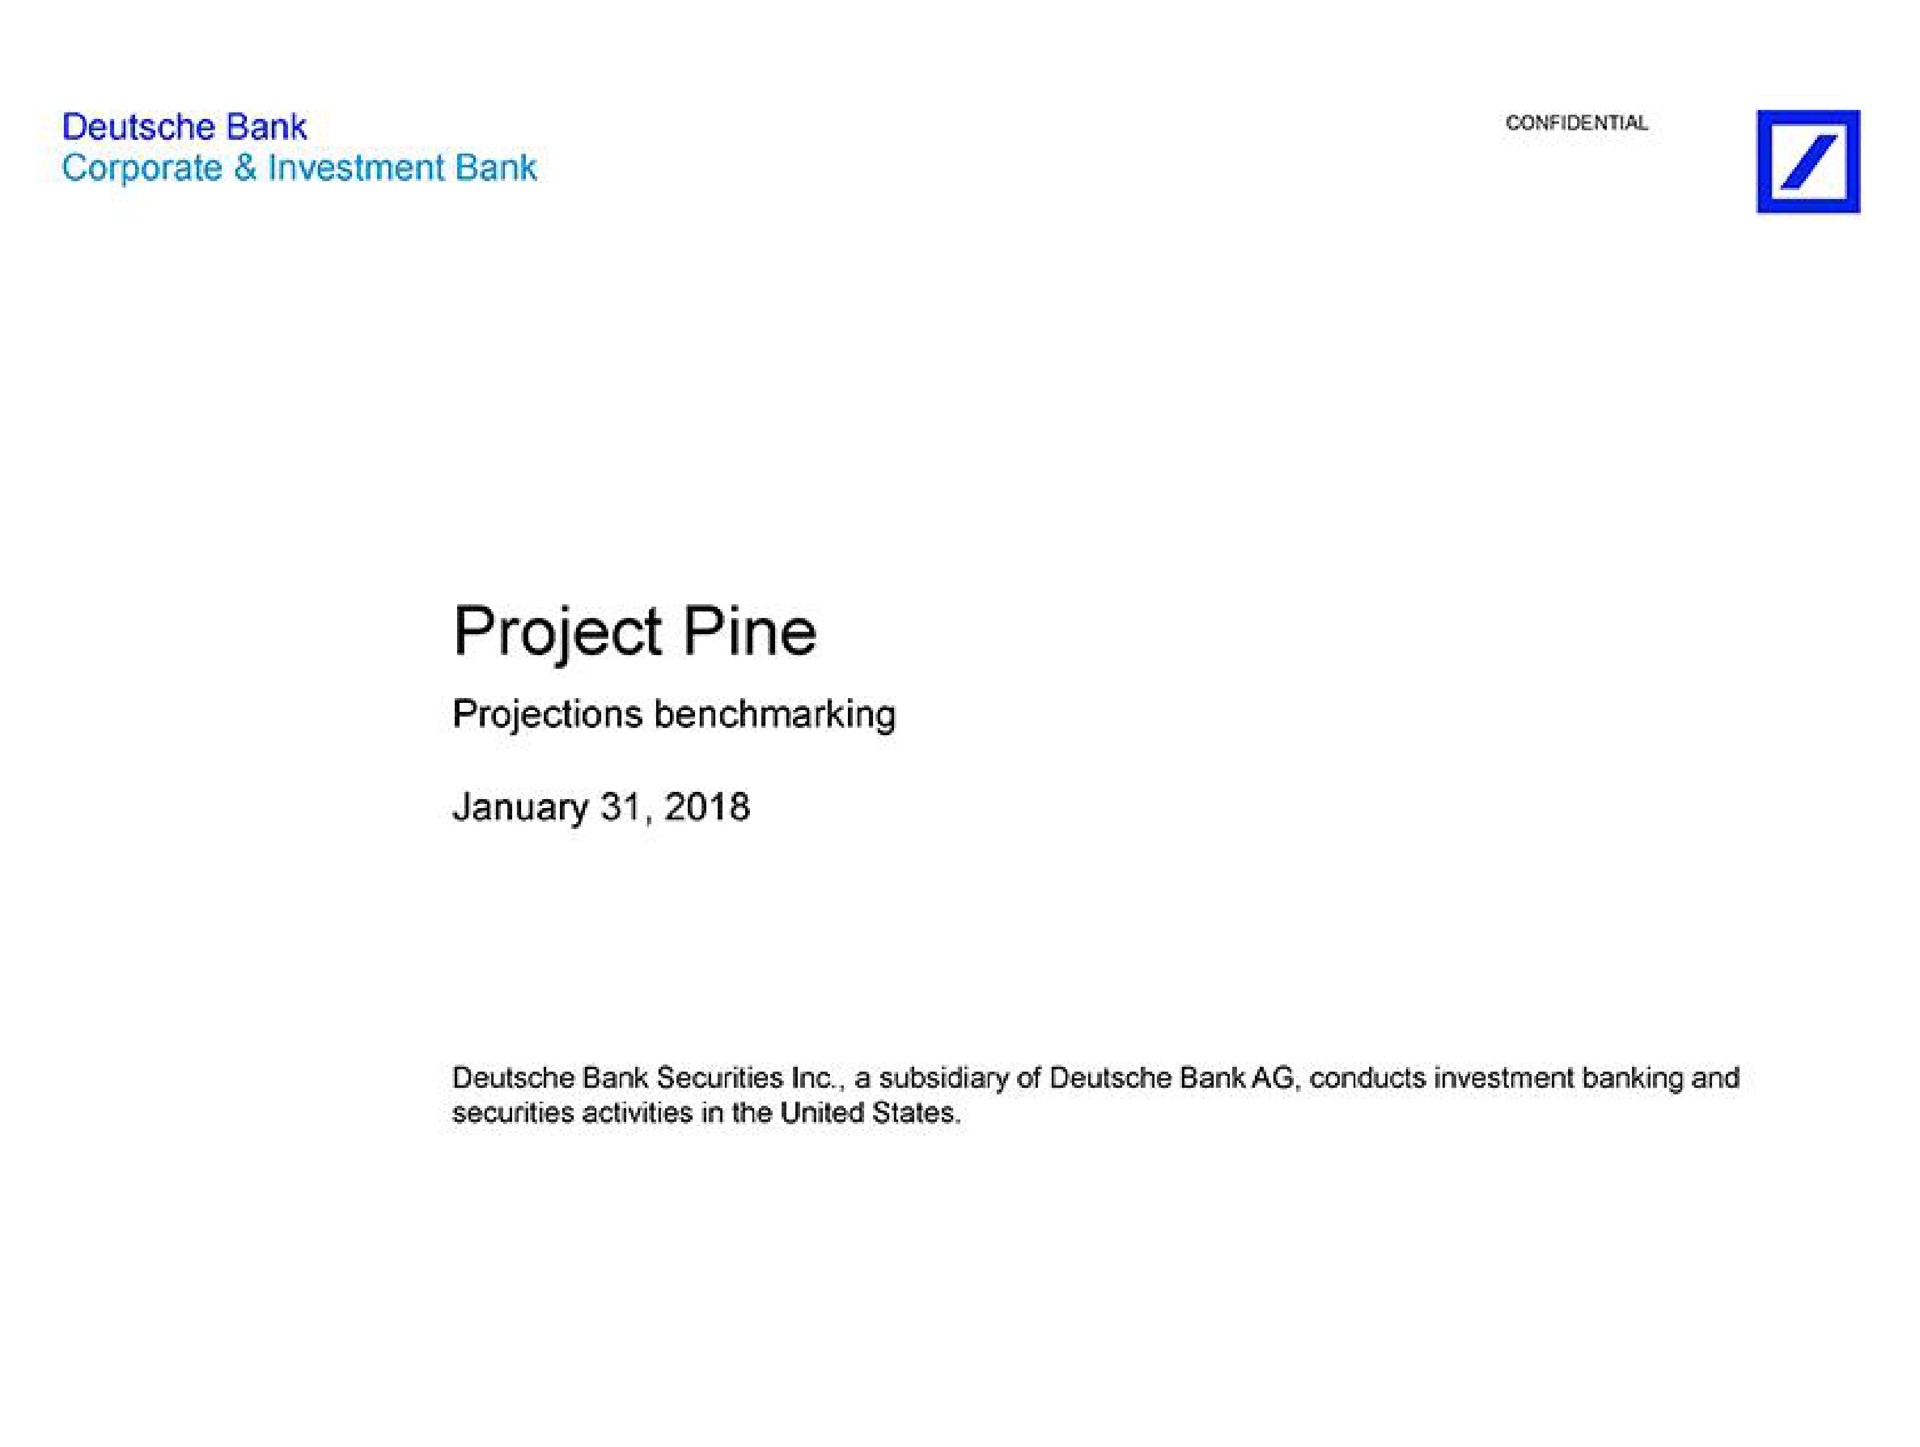 project pine | Deutsche Bank